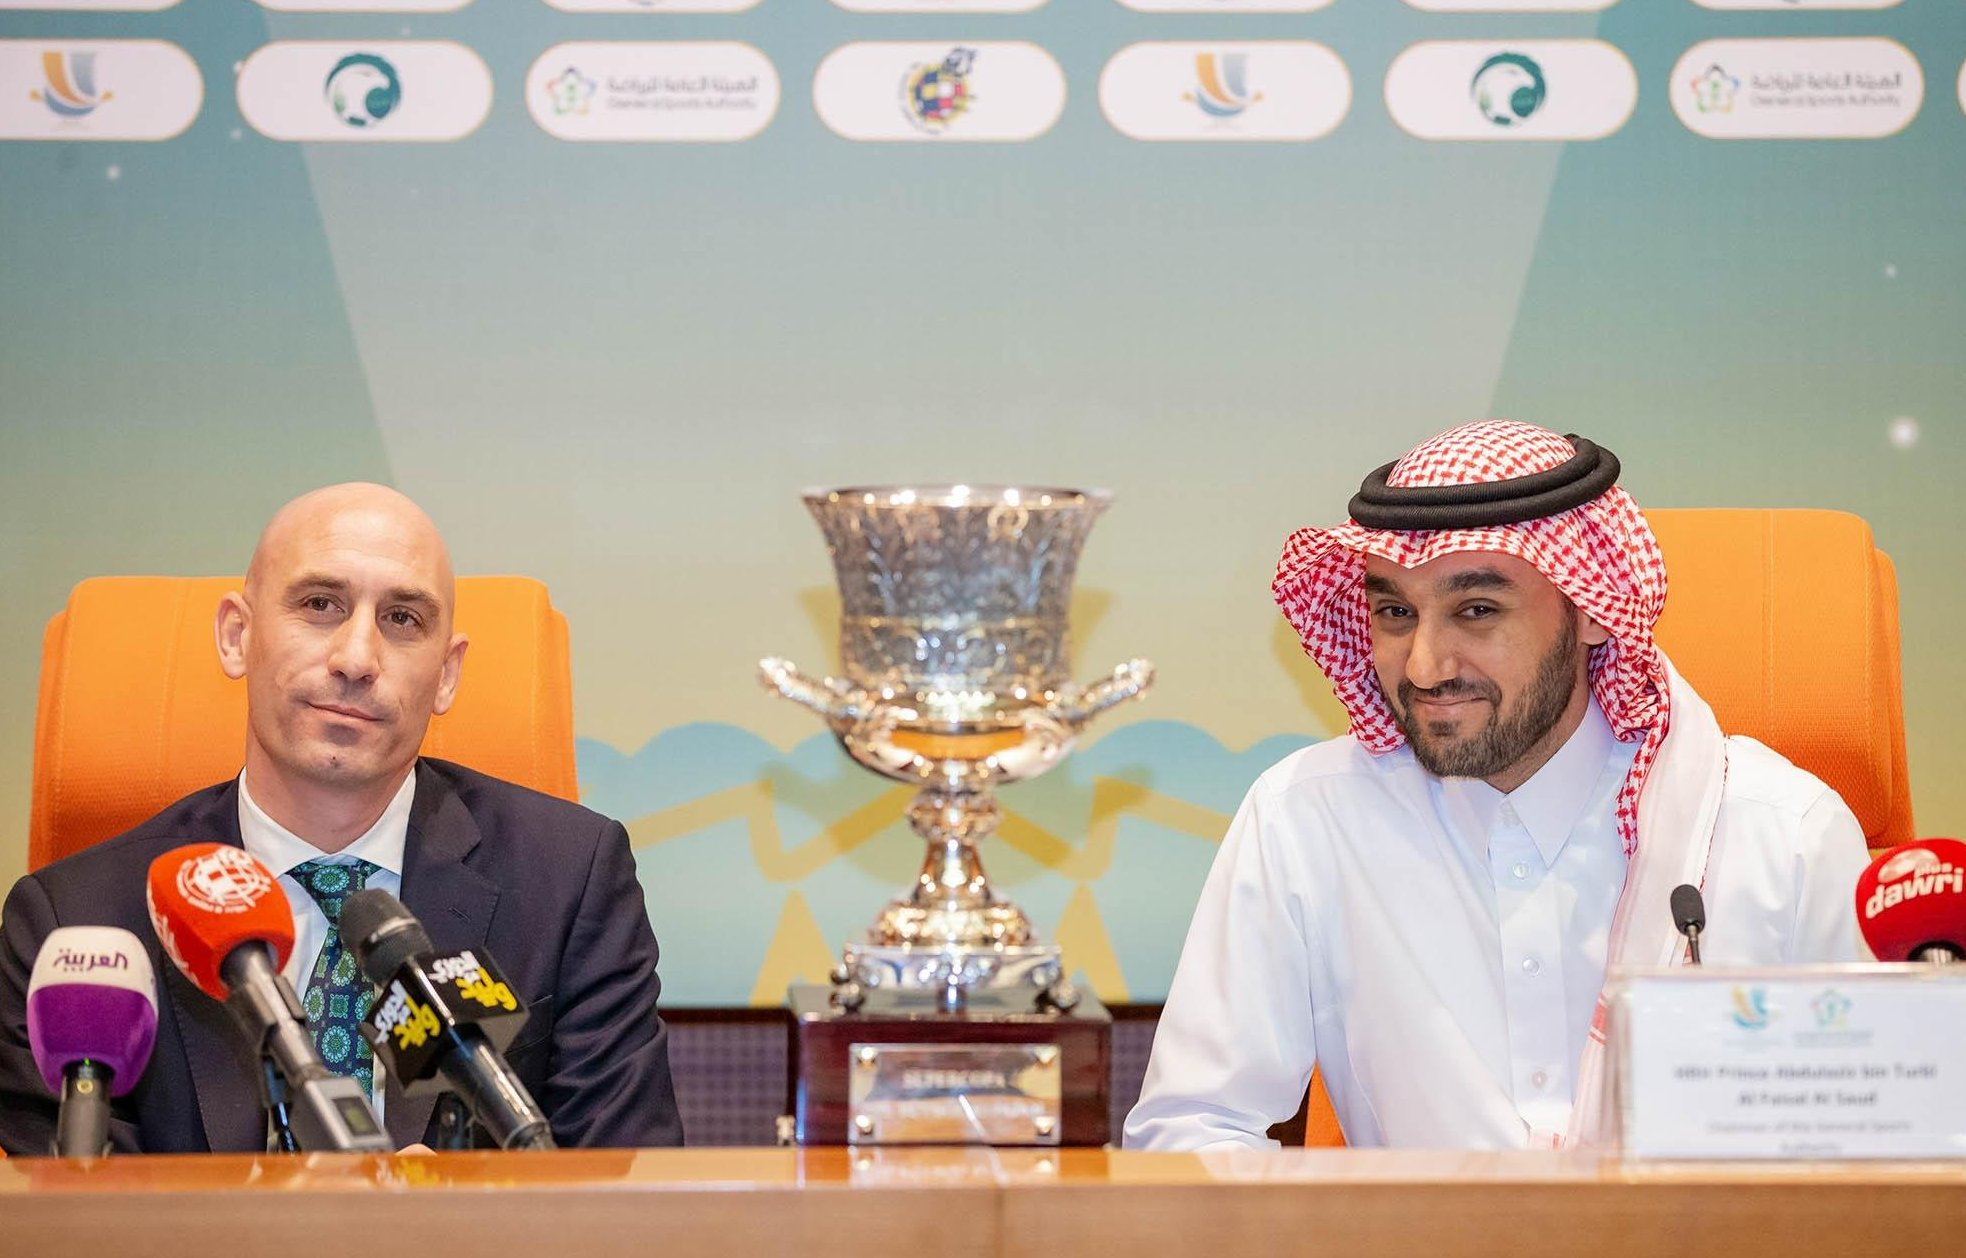 Luis Rubiales (Präsident des spanischen Fußballverbandes) und Abdulasis bin Turki al-Faisal (Saudi-Arabiens Sportminister)